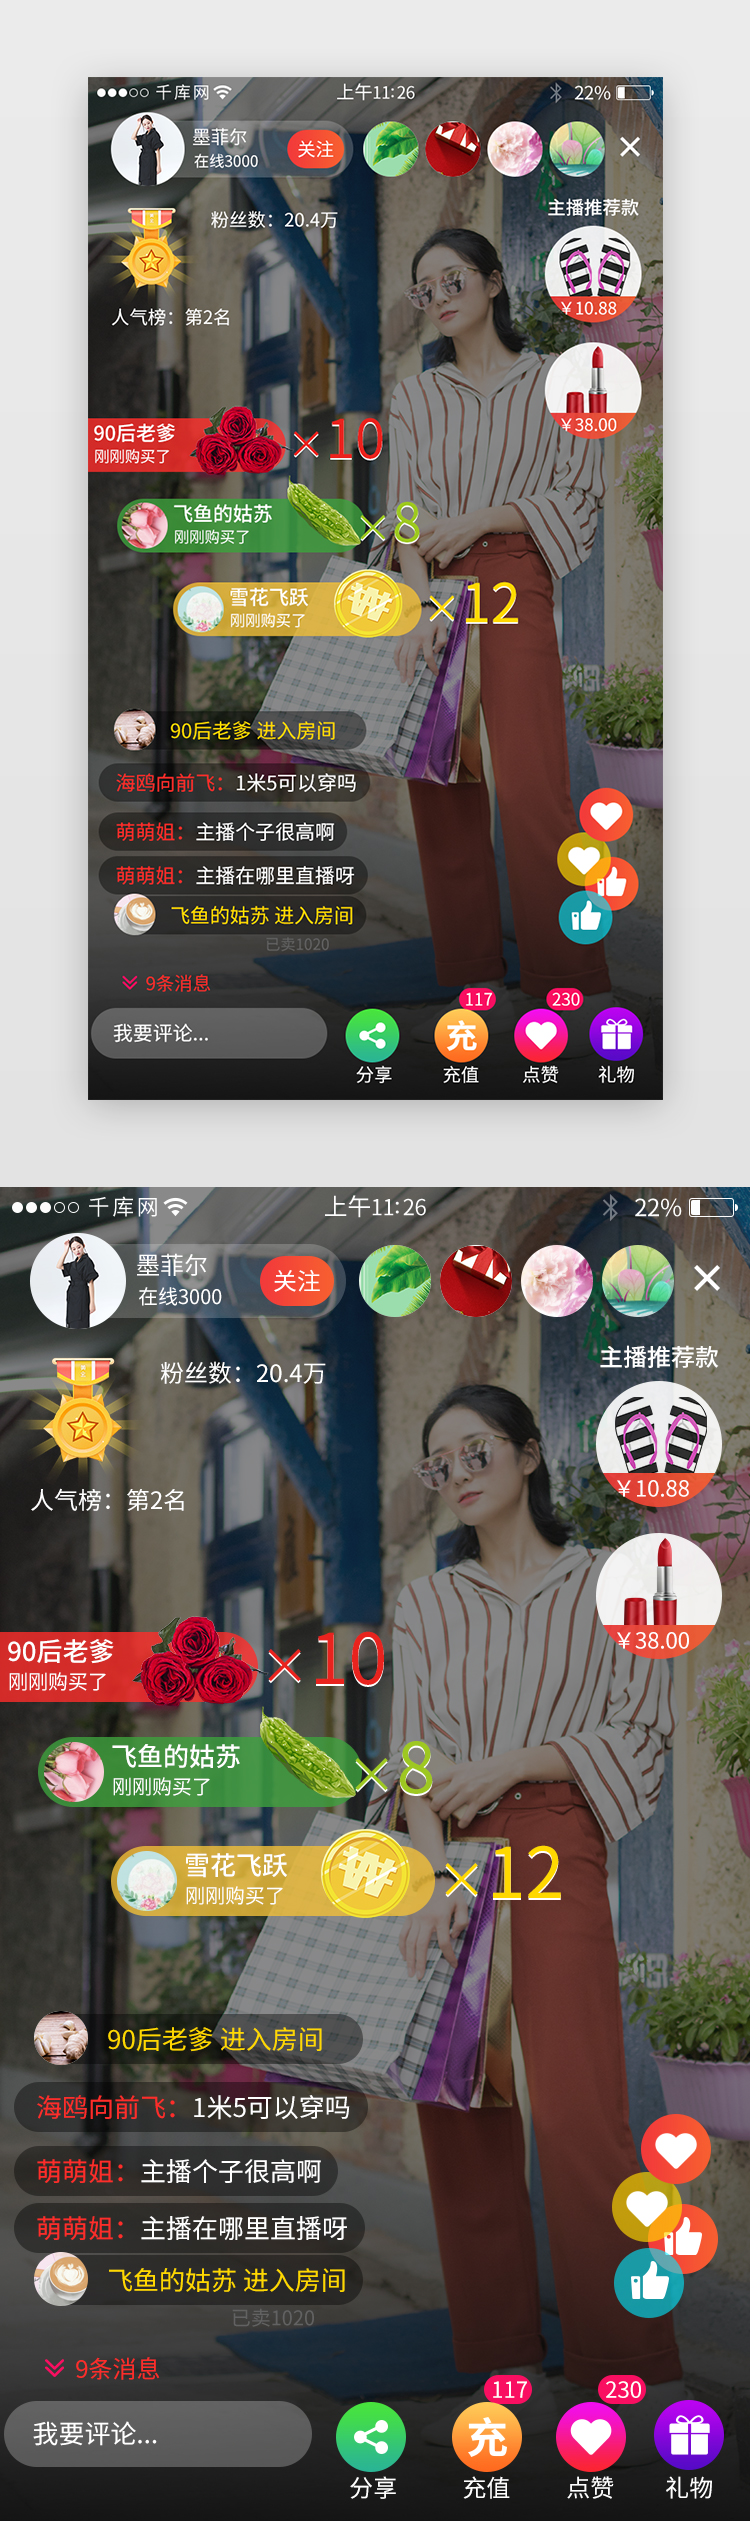 红色系短视频app界面模板图片